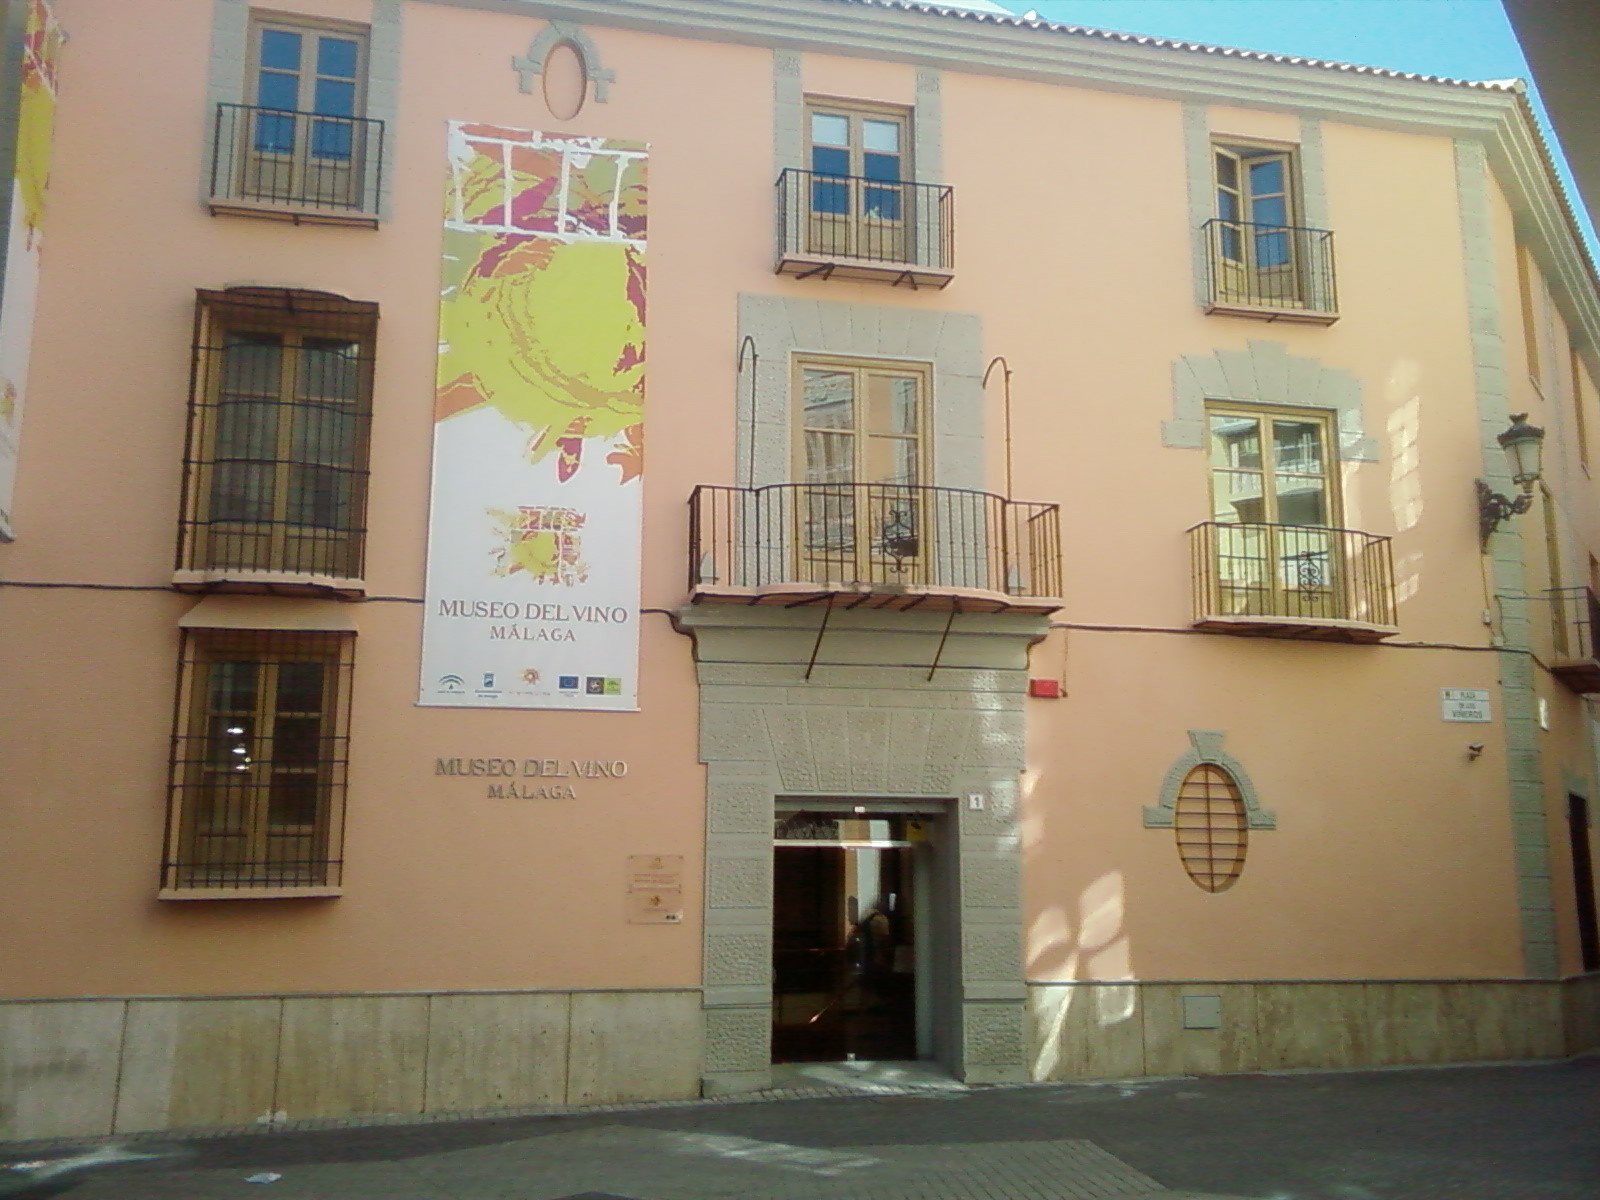 Museo del Vino Málaga